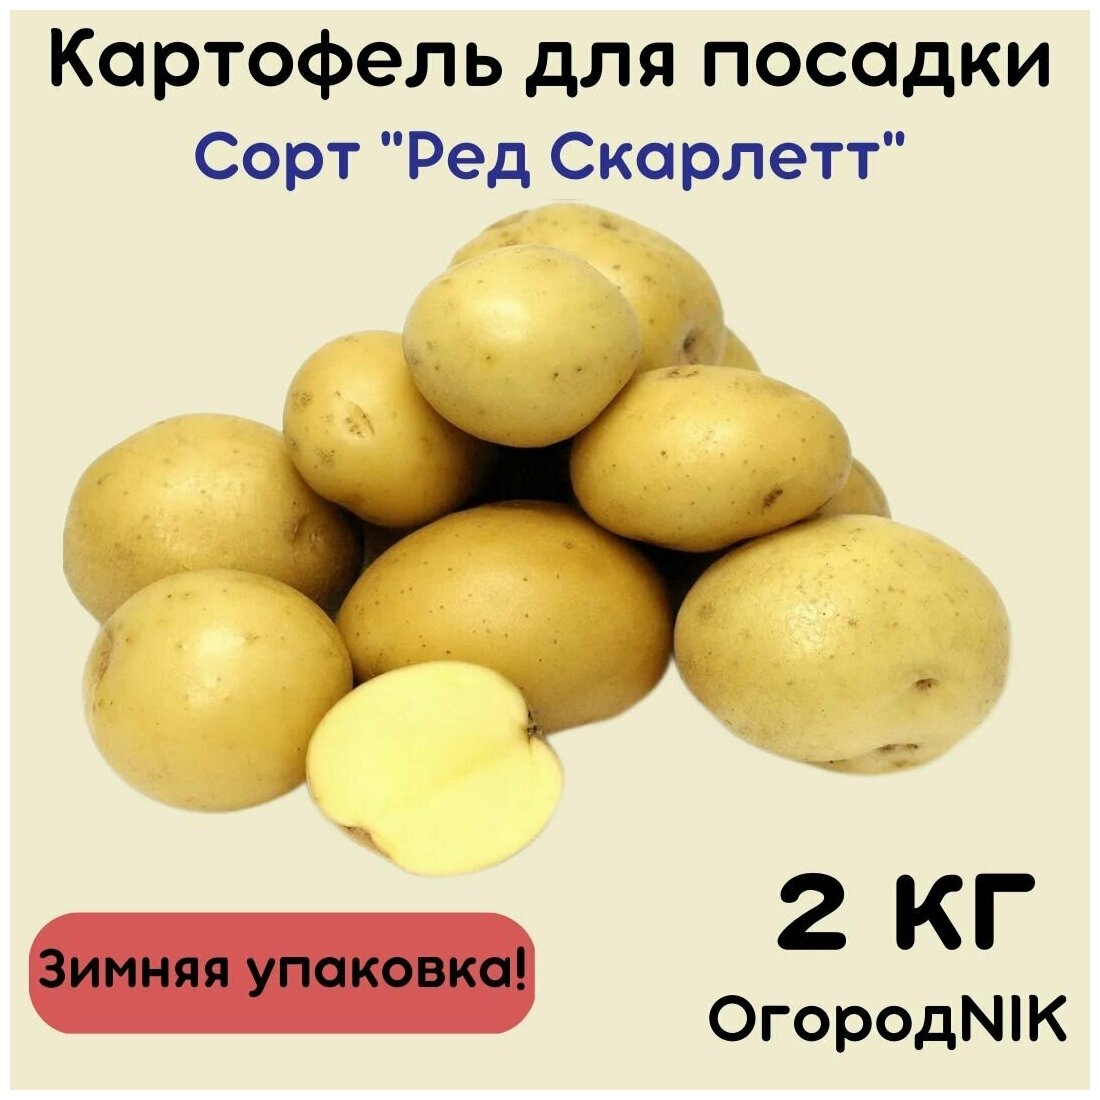 Картофель семенной "Ред Скарлетт"